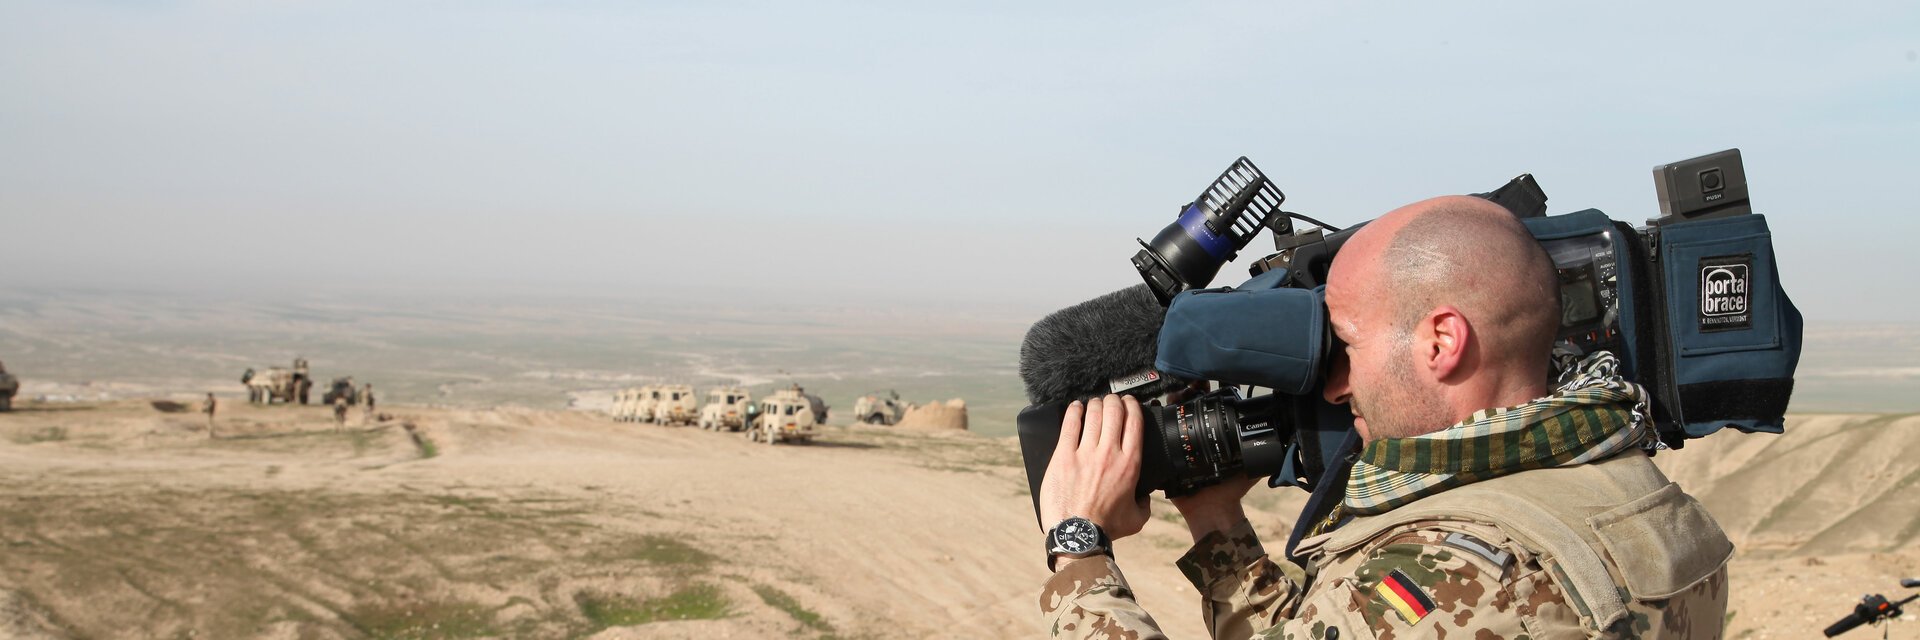 Soldat mit Kamera- und VideoausrÃ¼stung filmt in der WÃ¼ste